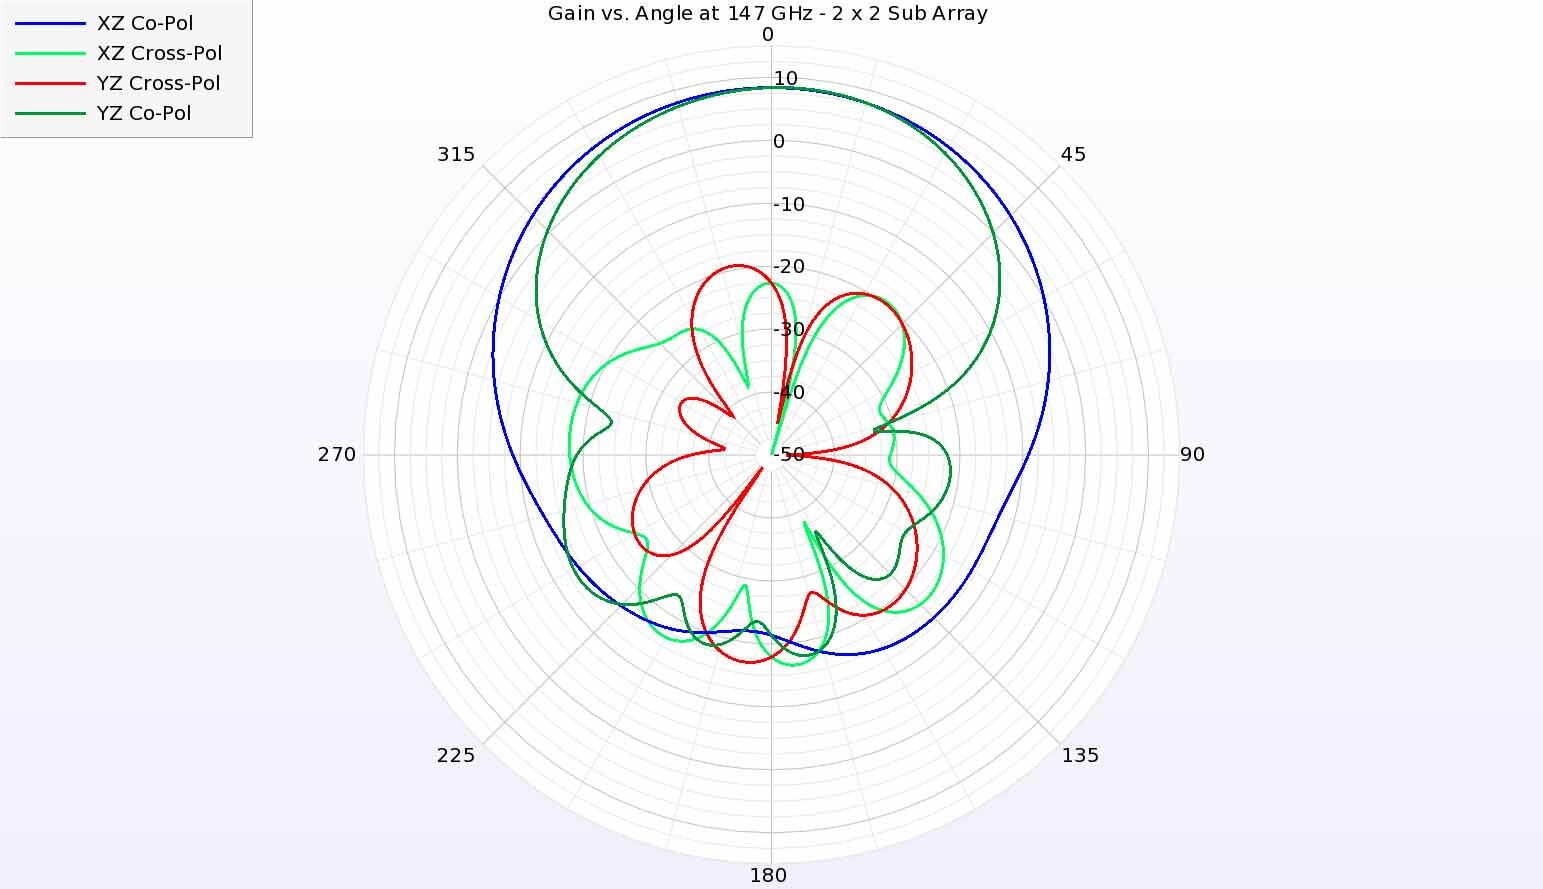 Figura 10: A 147 GHz, los diagramas de ganancia de la antena siguen teniendo una ganancia similar a la de las frecuencias más bajas, pero la ganancia en el plano YZ no es tan amplia como en el plano XZ y la ganancia de polarización cruzada crece hasta niveles más altos.